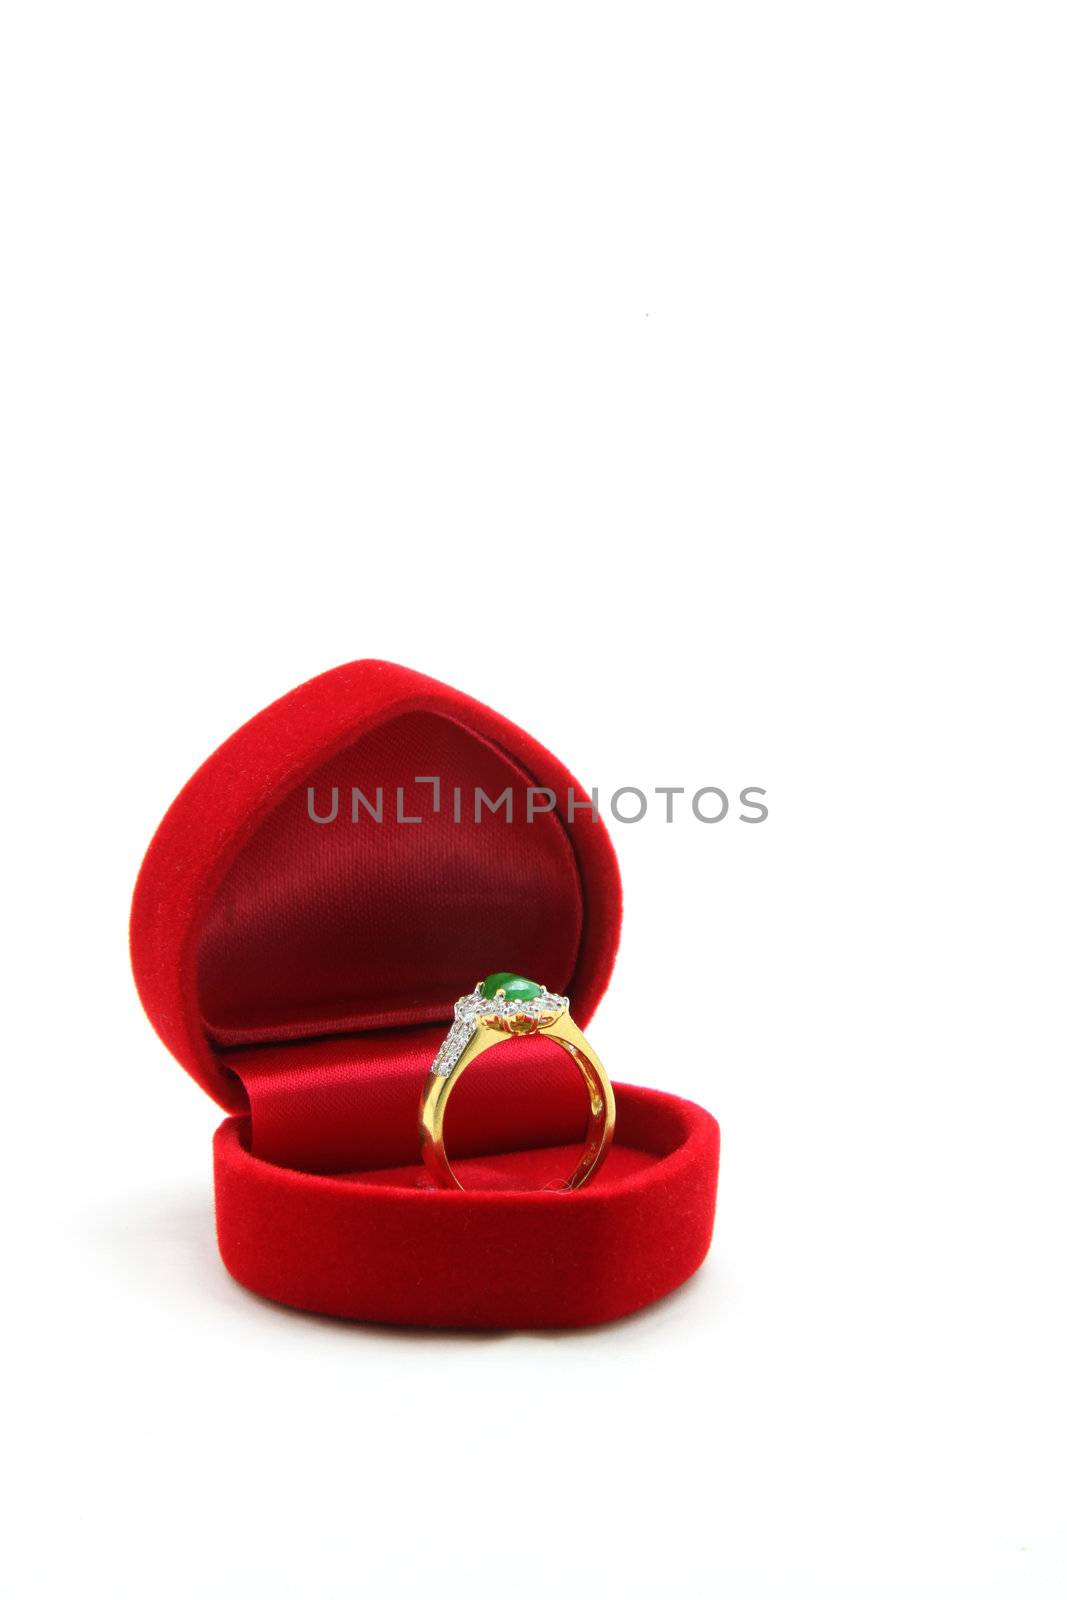 isolated female luxury diamond jade ring in red velvet box